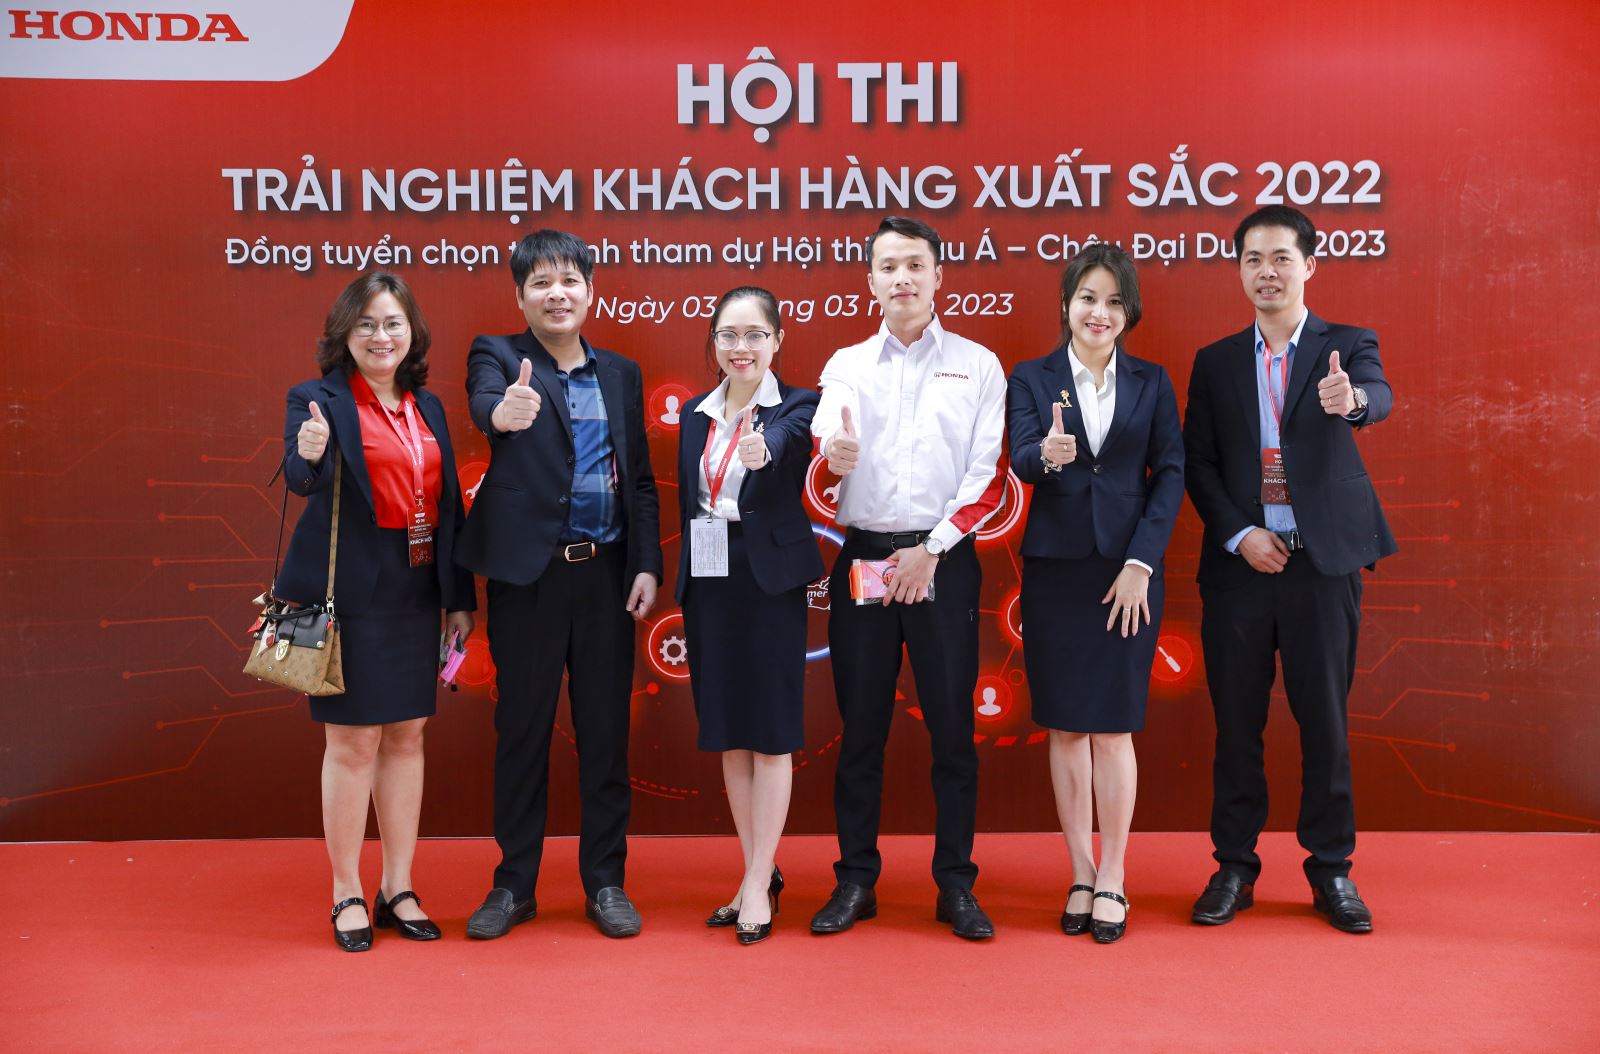 Đại diện Honda Ôtô Thái Bình - Hoàng Diệu tham dự vòng Chung kết hội thi "Trải nghiệm khách hàng xuất sắc 2022"